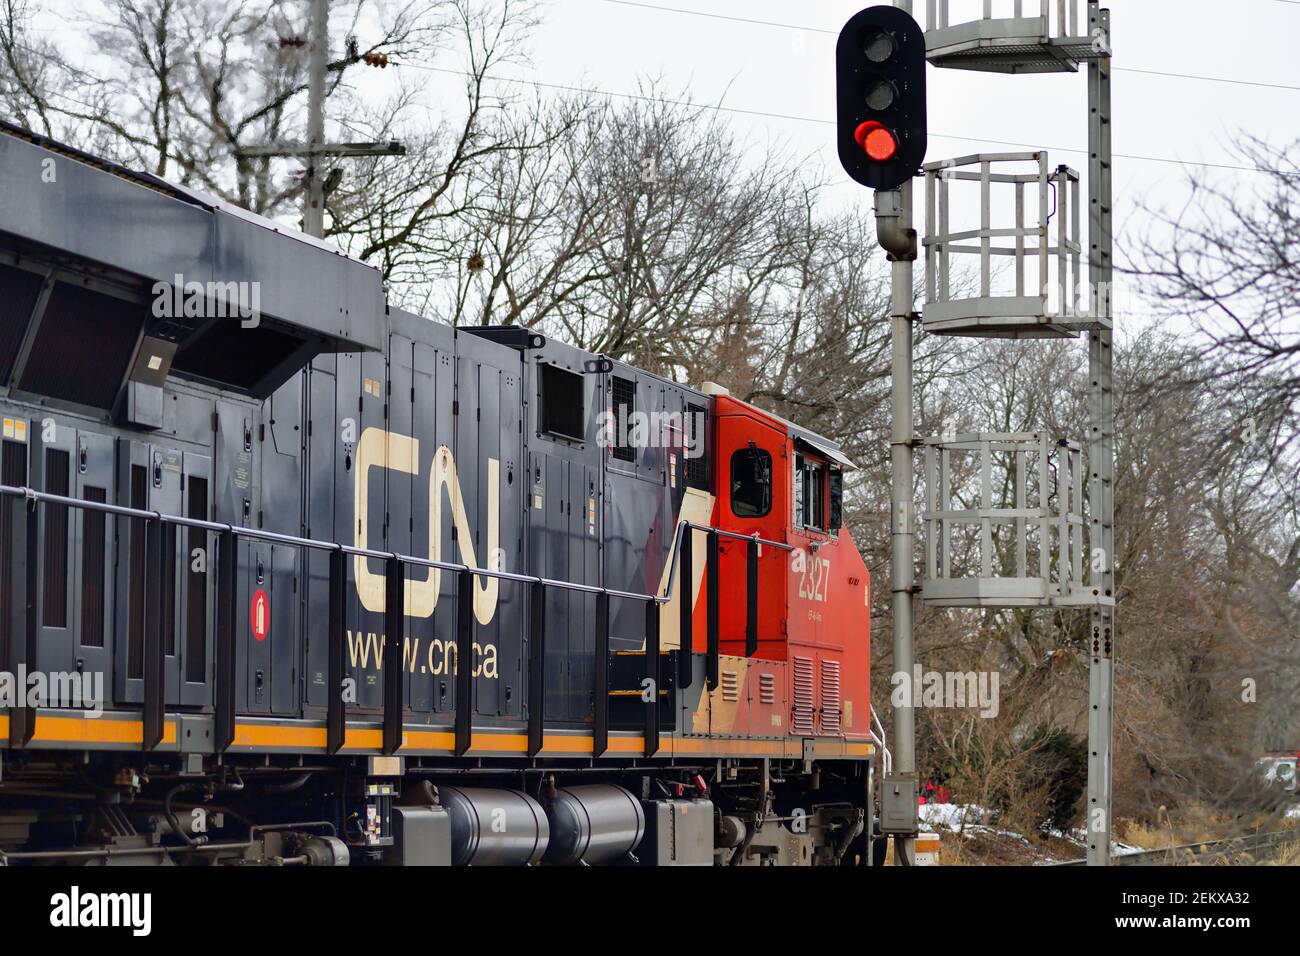 West Chicago, Illinois, USA. Eine einzelne Lokomotive der Canadian National Railway, die einen Güterzug führt, passiert ein Blocksignal. Stockfoto